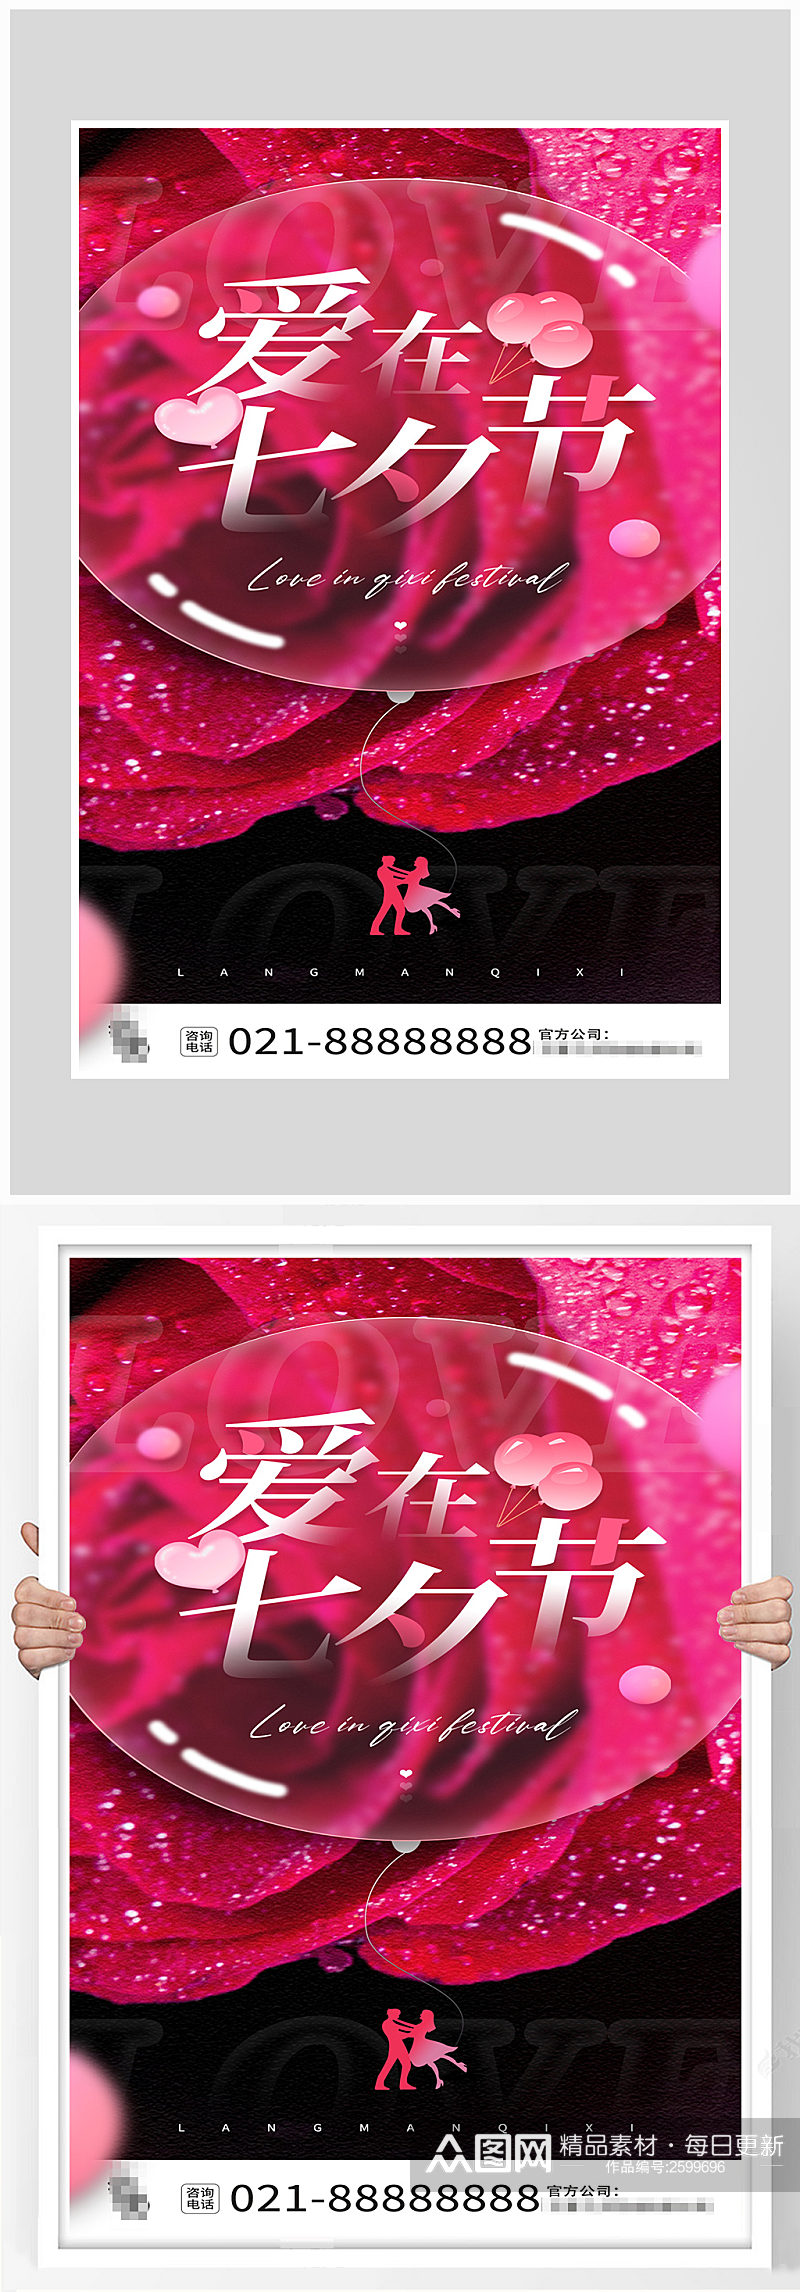 创意唯美玫瑰七夕节海报设计素材